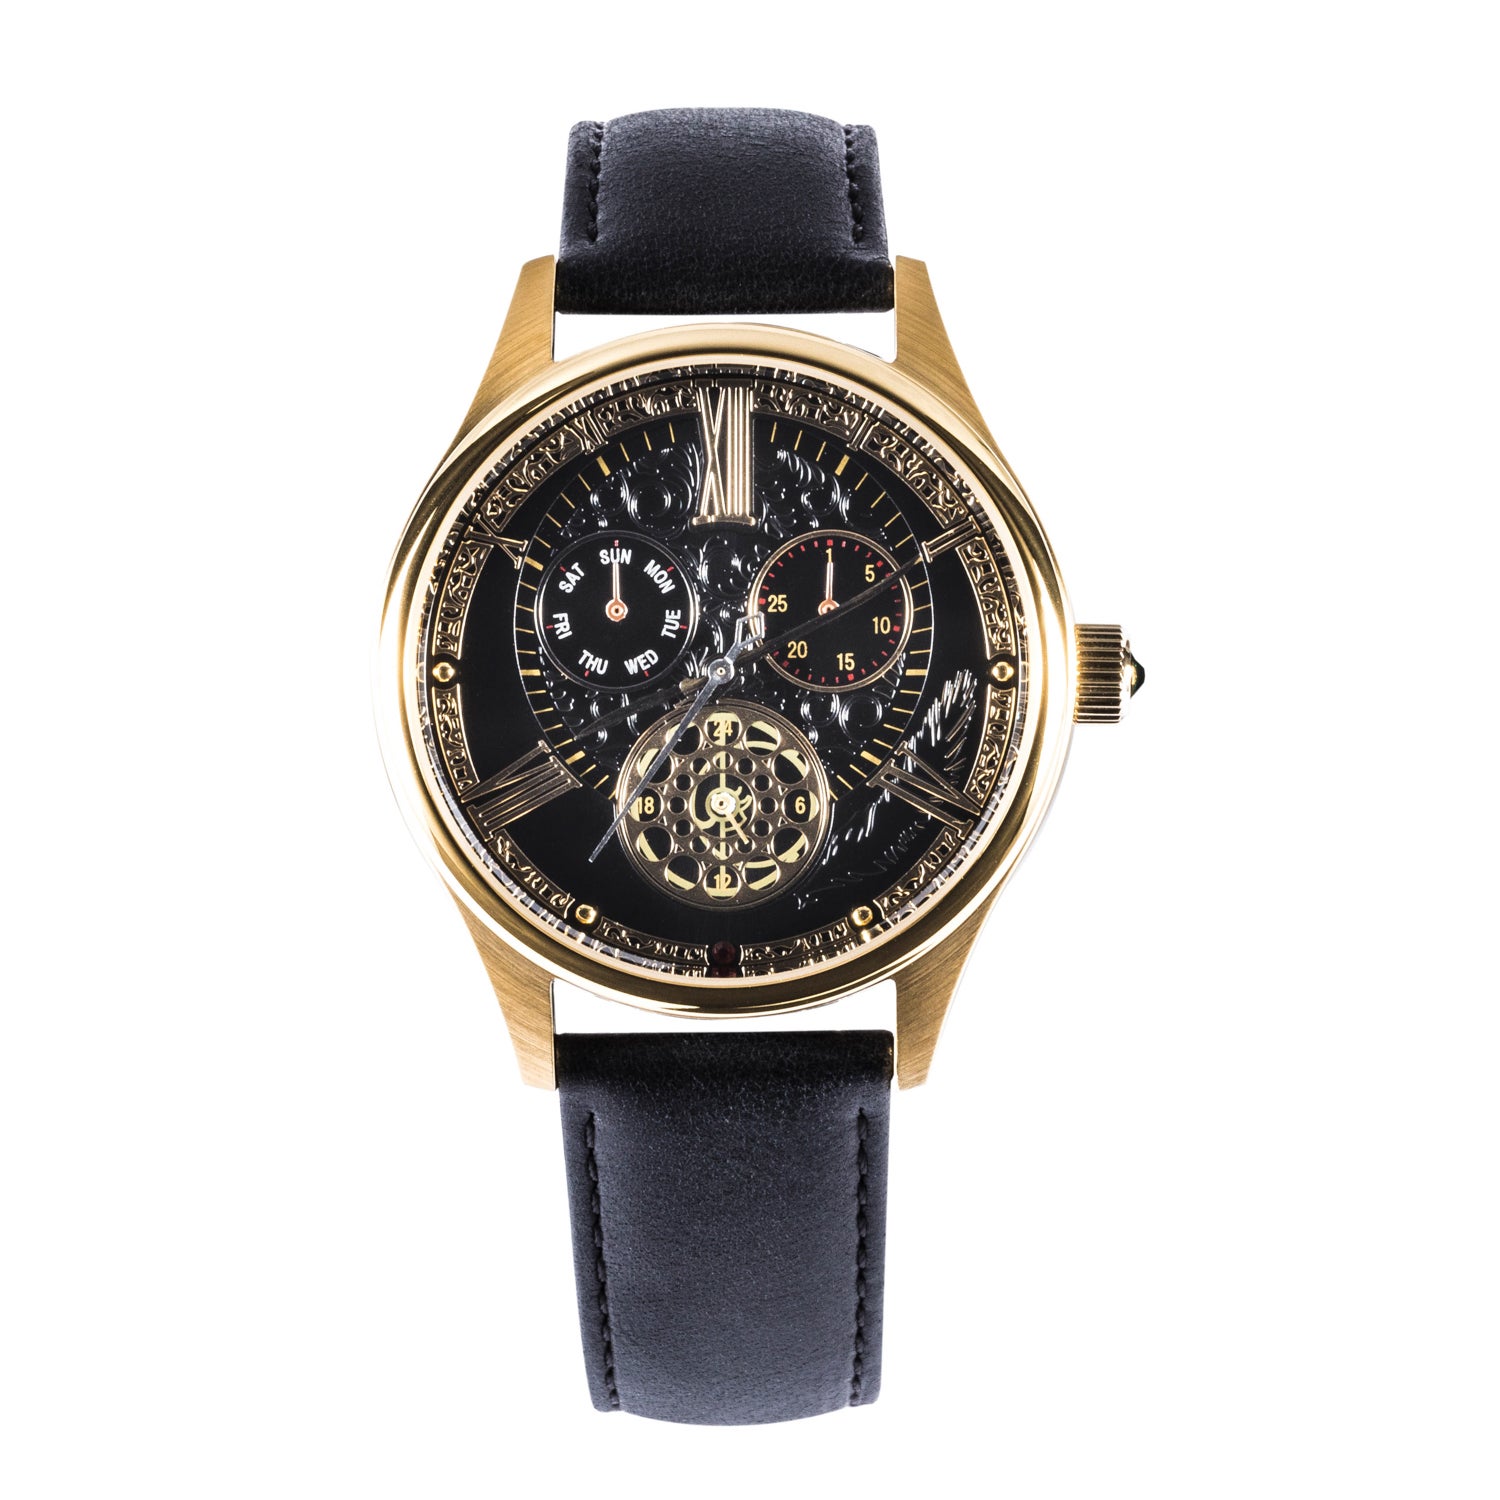 14,900円スーパーグルーピーズ Bloodborne コラボ腕時計 時計塔のマリアモデル